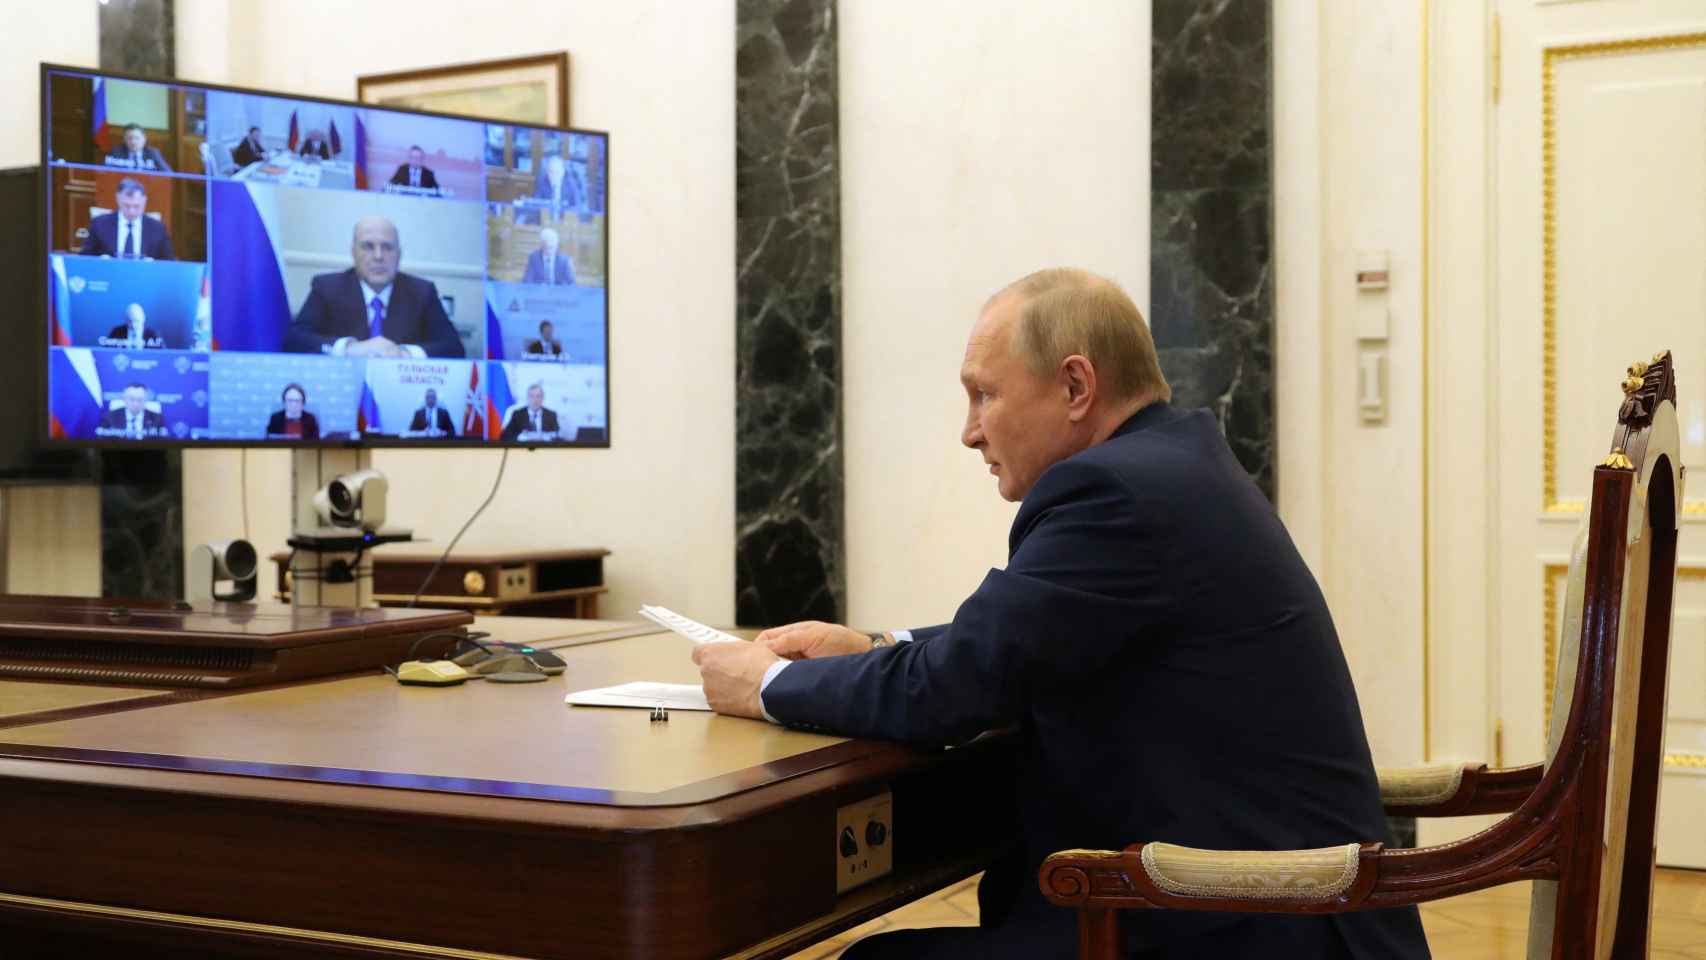 El presidente de Rusia, Vladimir Putin, atiende una videollamada desde el Kremlin este miércoles 20 de abril.